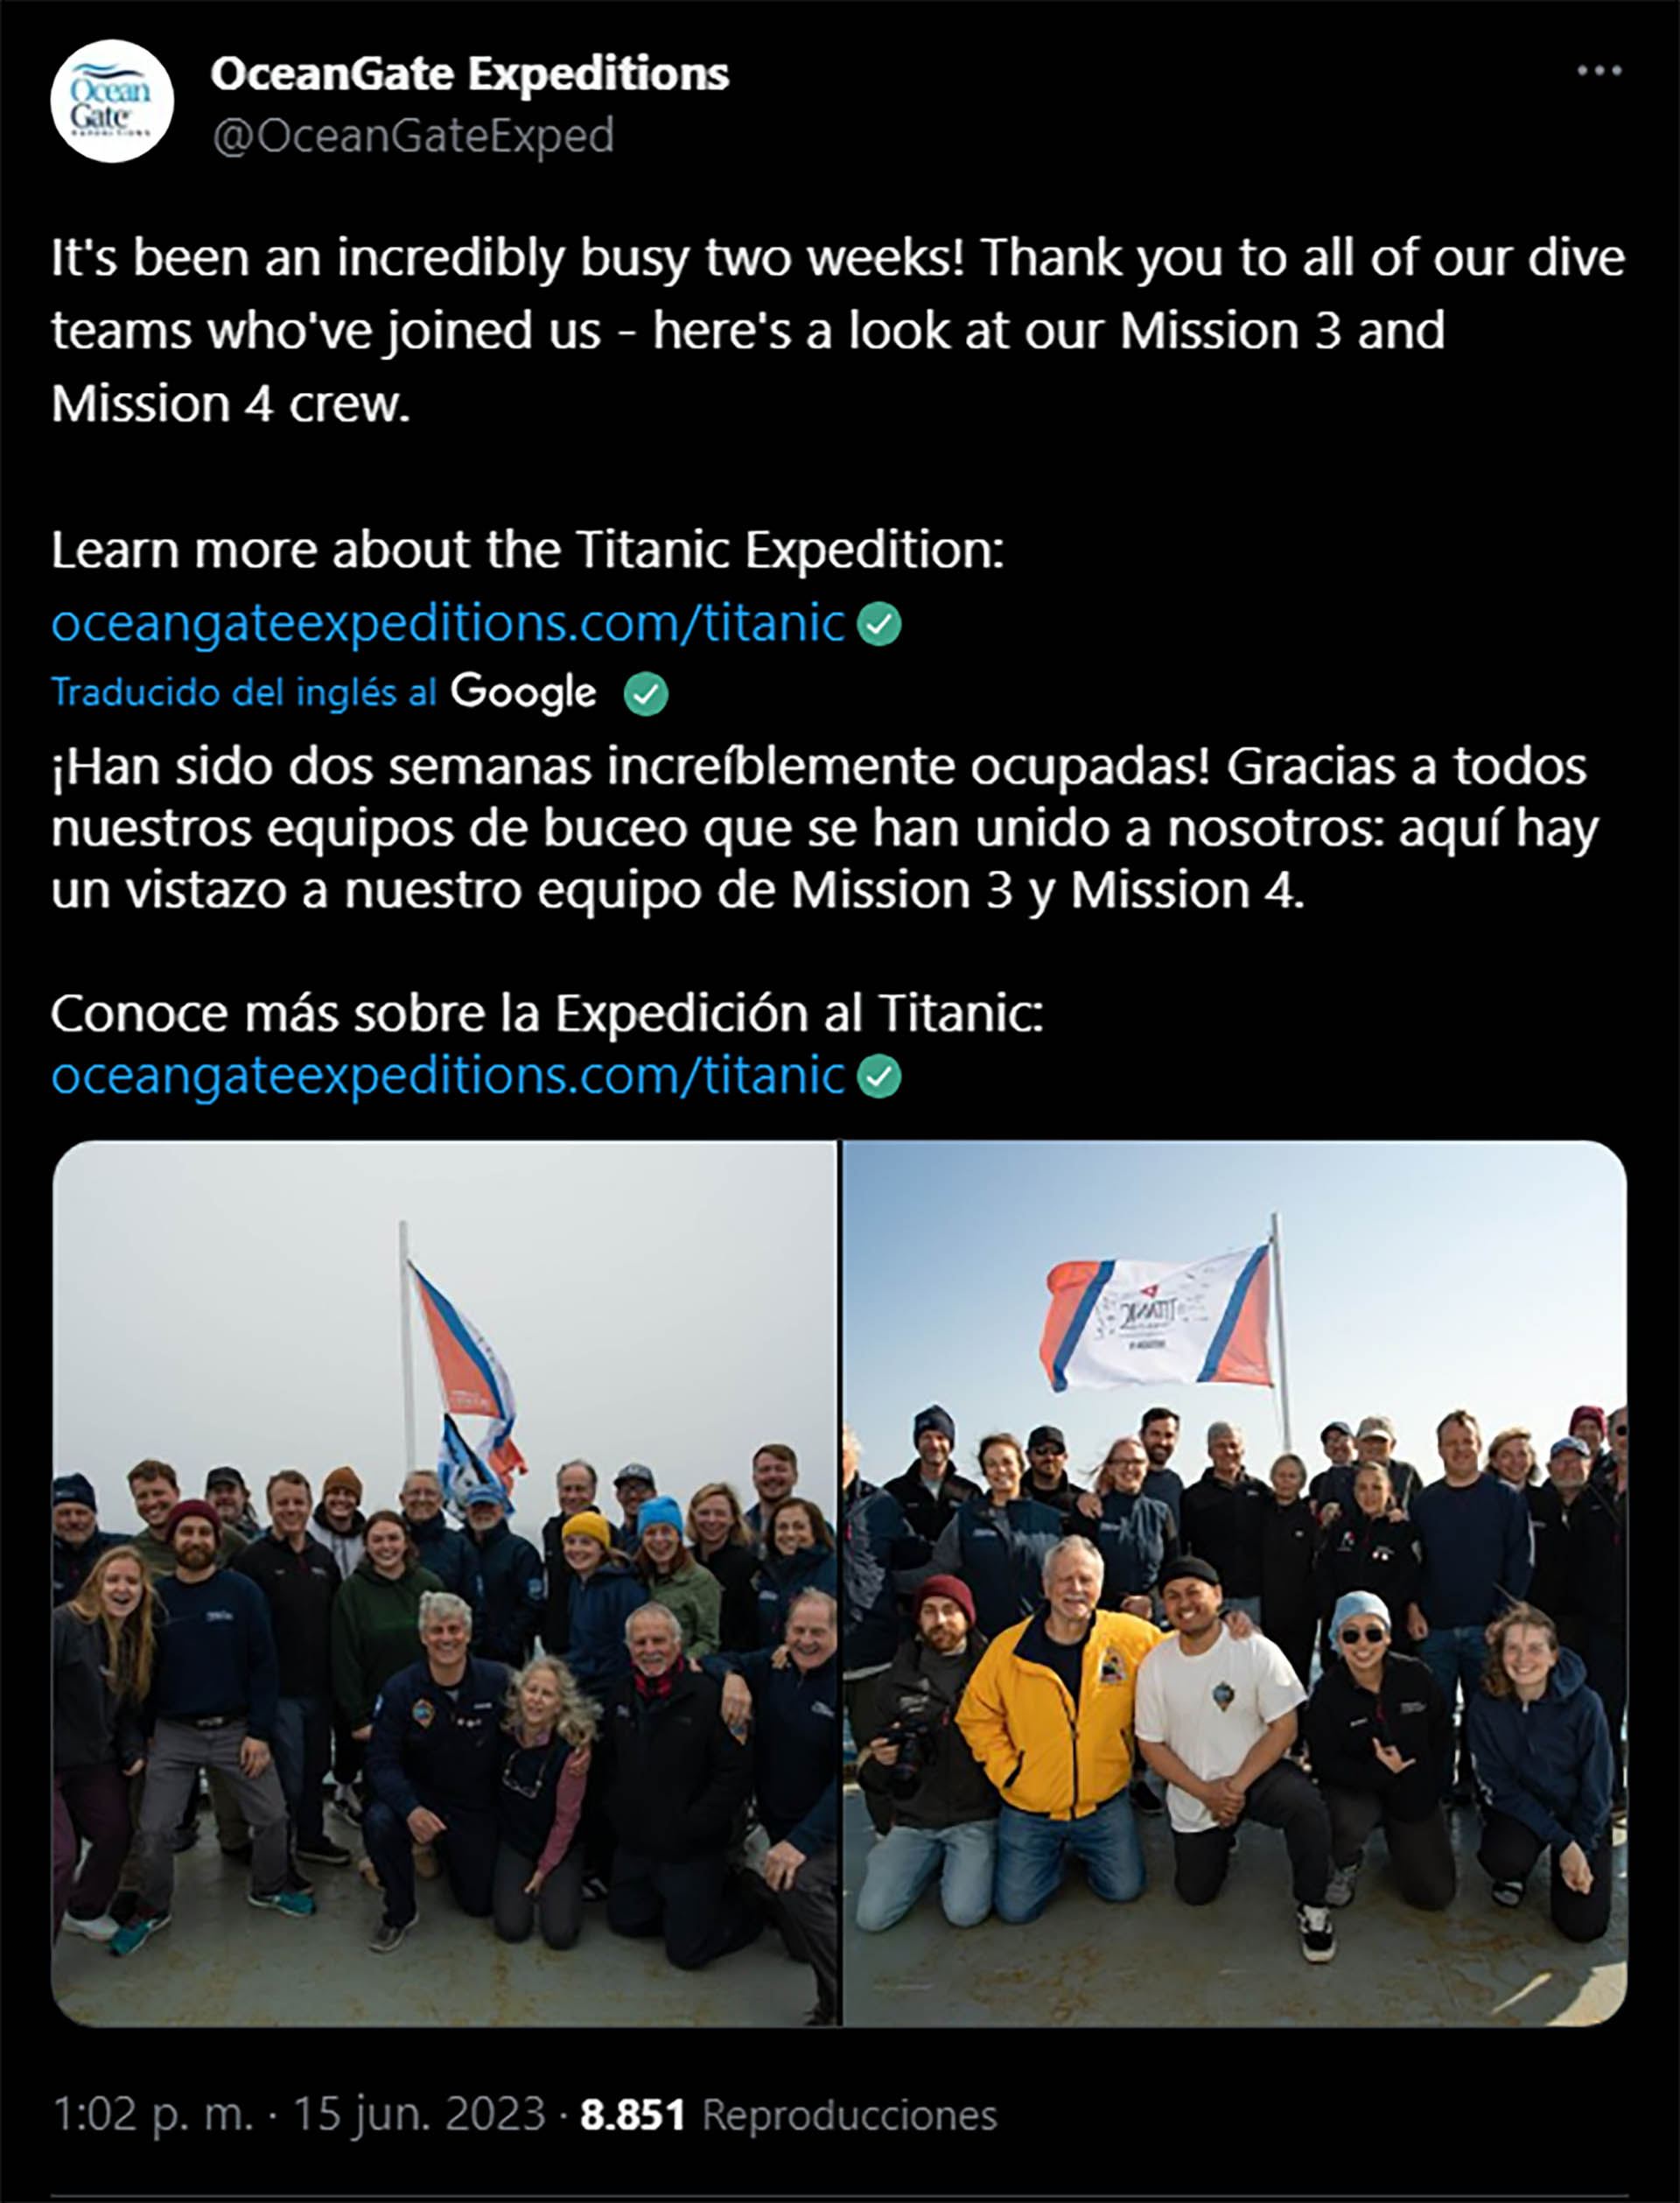 El último tuit de OceanGate muestra a un grupo de personas que participó recientemnete de una expedición al Titanic